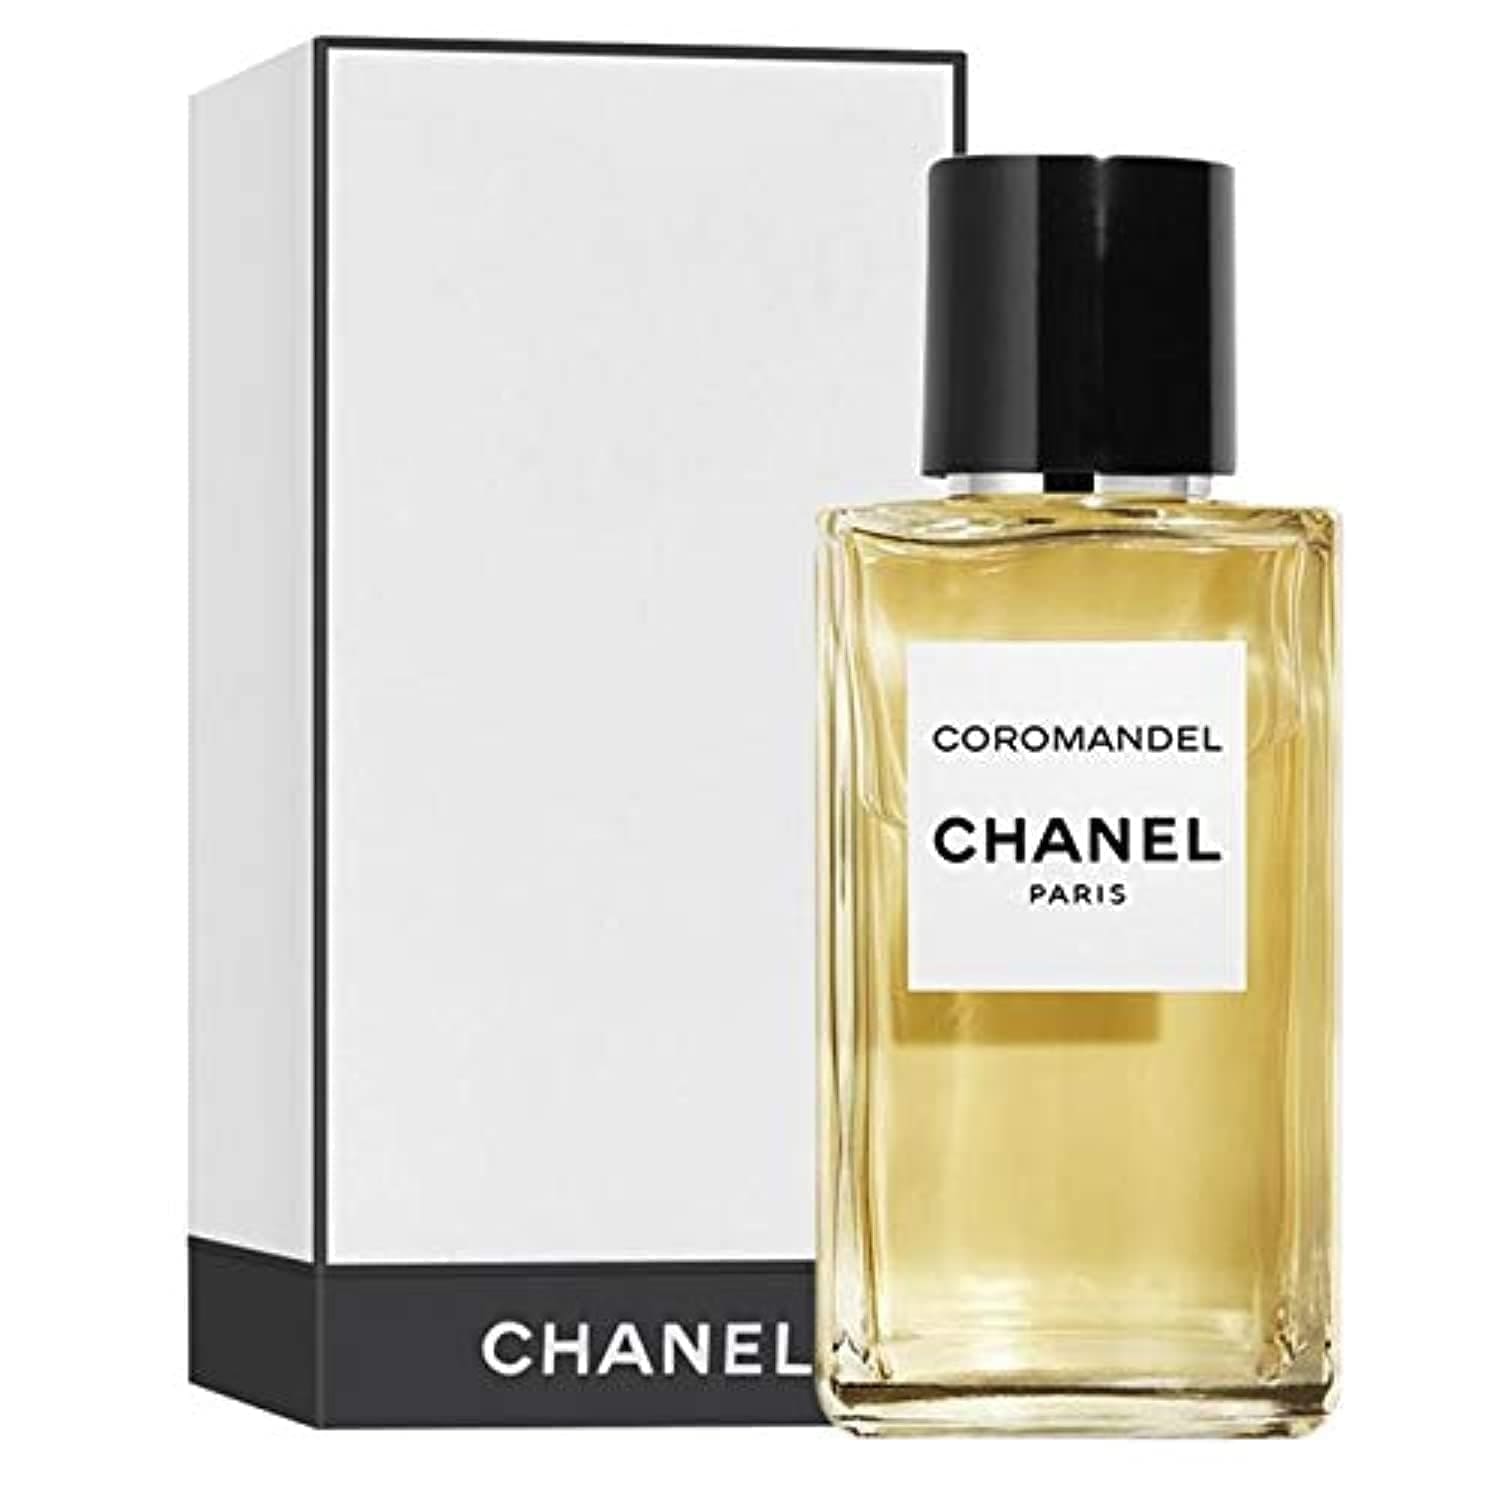 3687 Les Exclusifs de Chanel Coromandel Chanel edp 75 ml